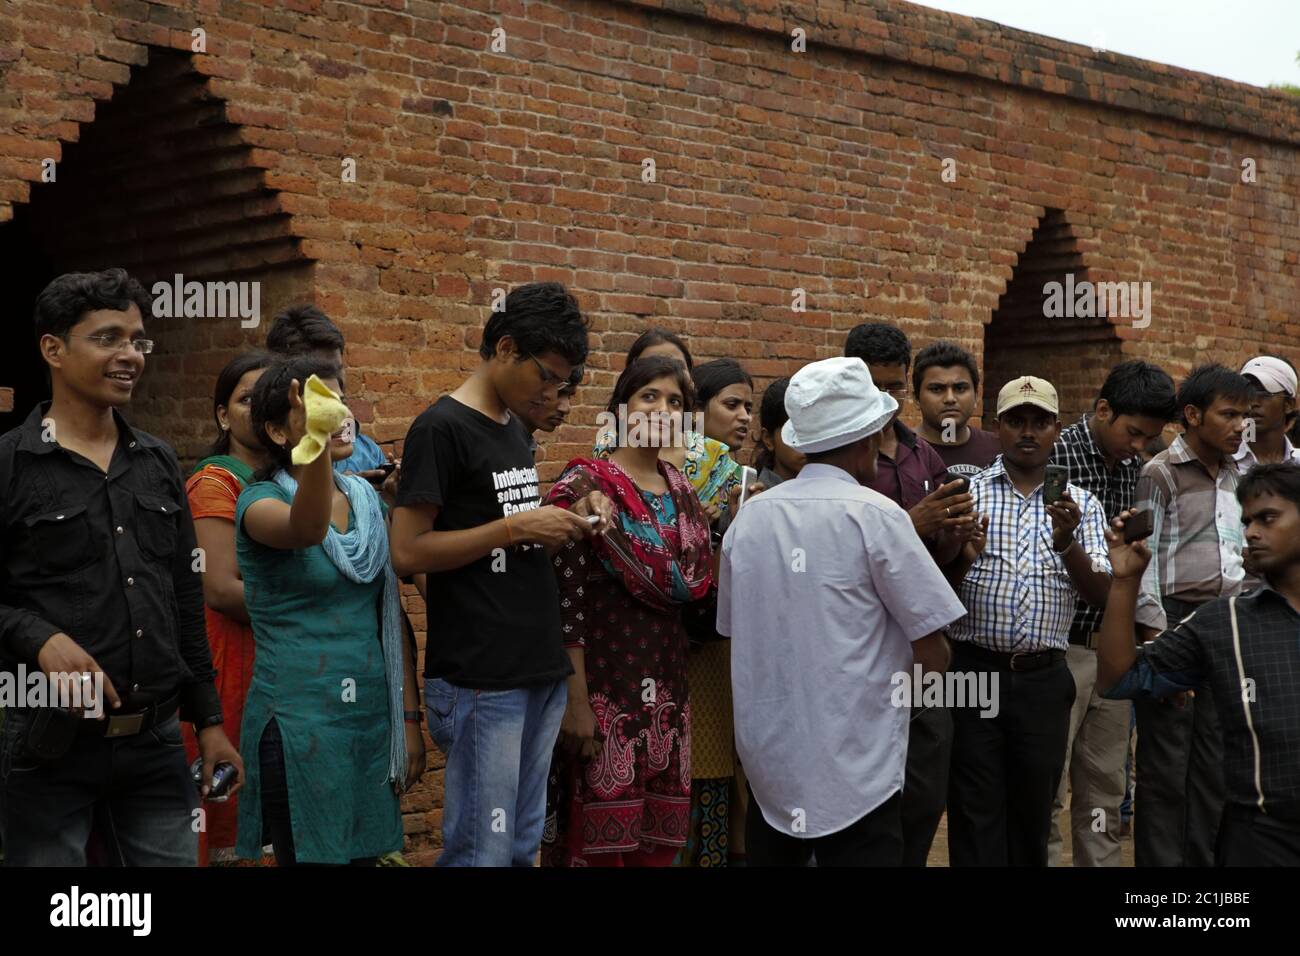 Universitätsstudenten erhalten Erläuterungen von einem Reiseleiter, während sie den alten buddhistischen Universitätskomplex von Nalanda in Nalanda, Bihar, Indien besuchen. Stockfoto